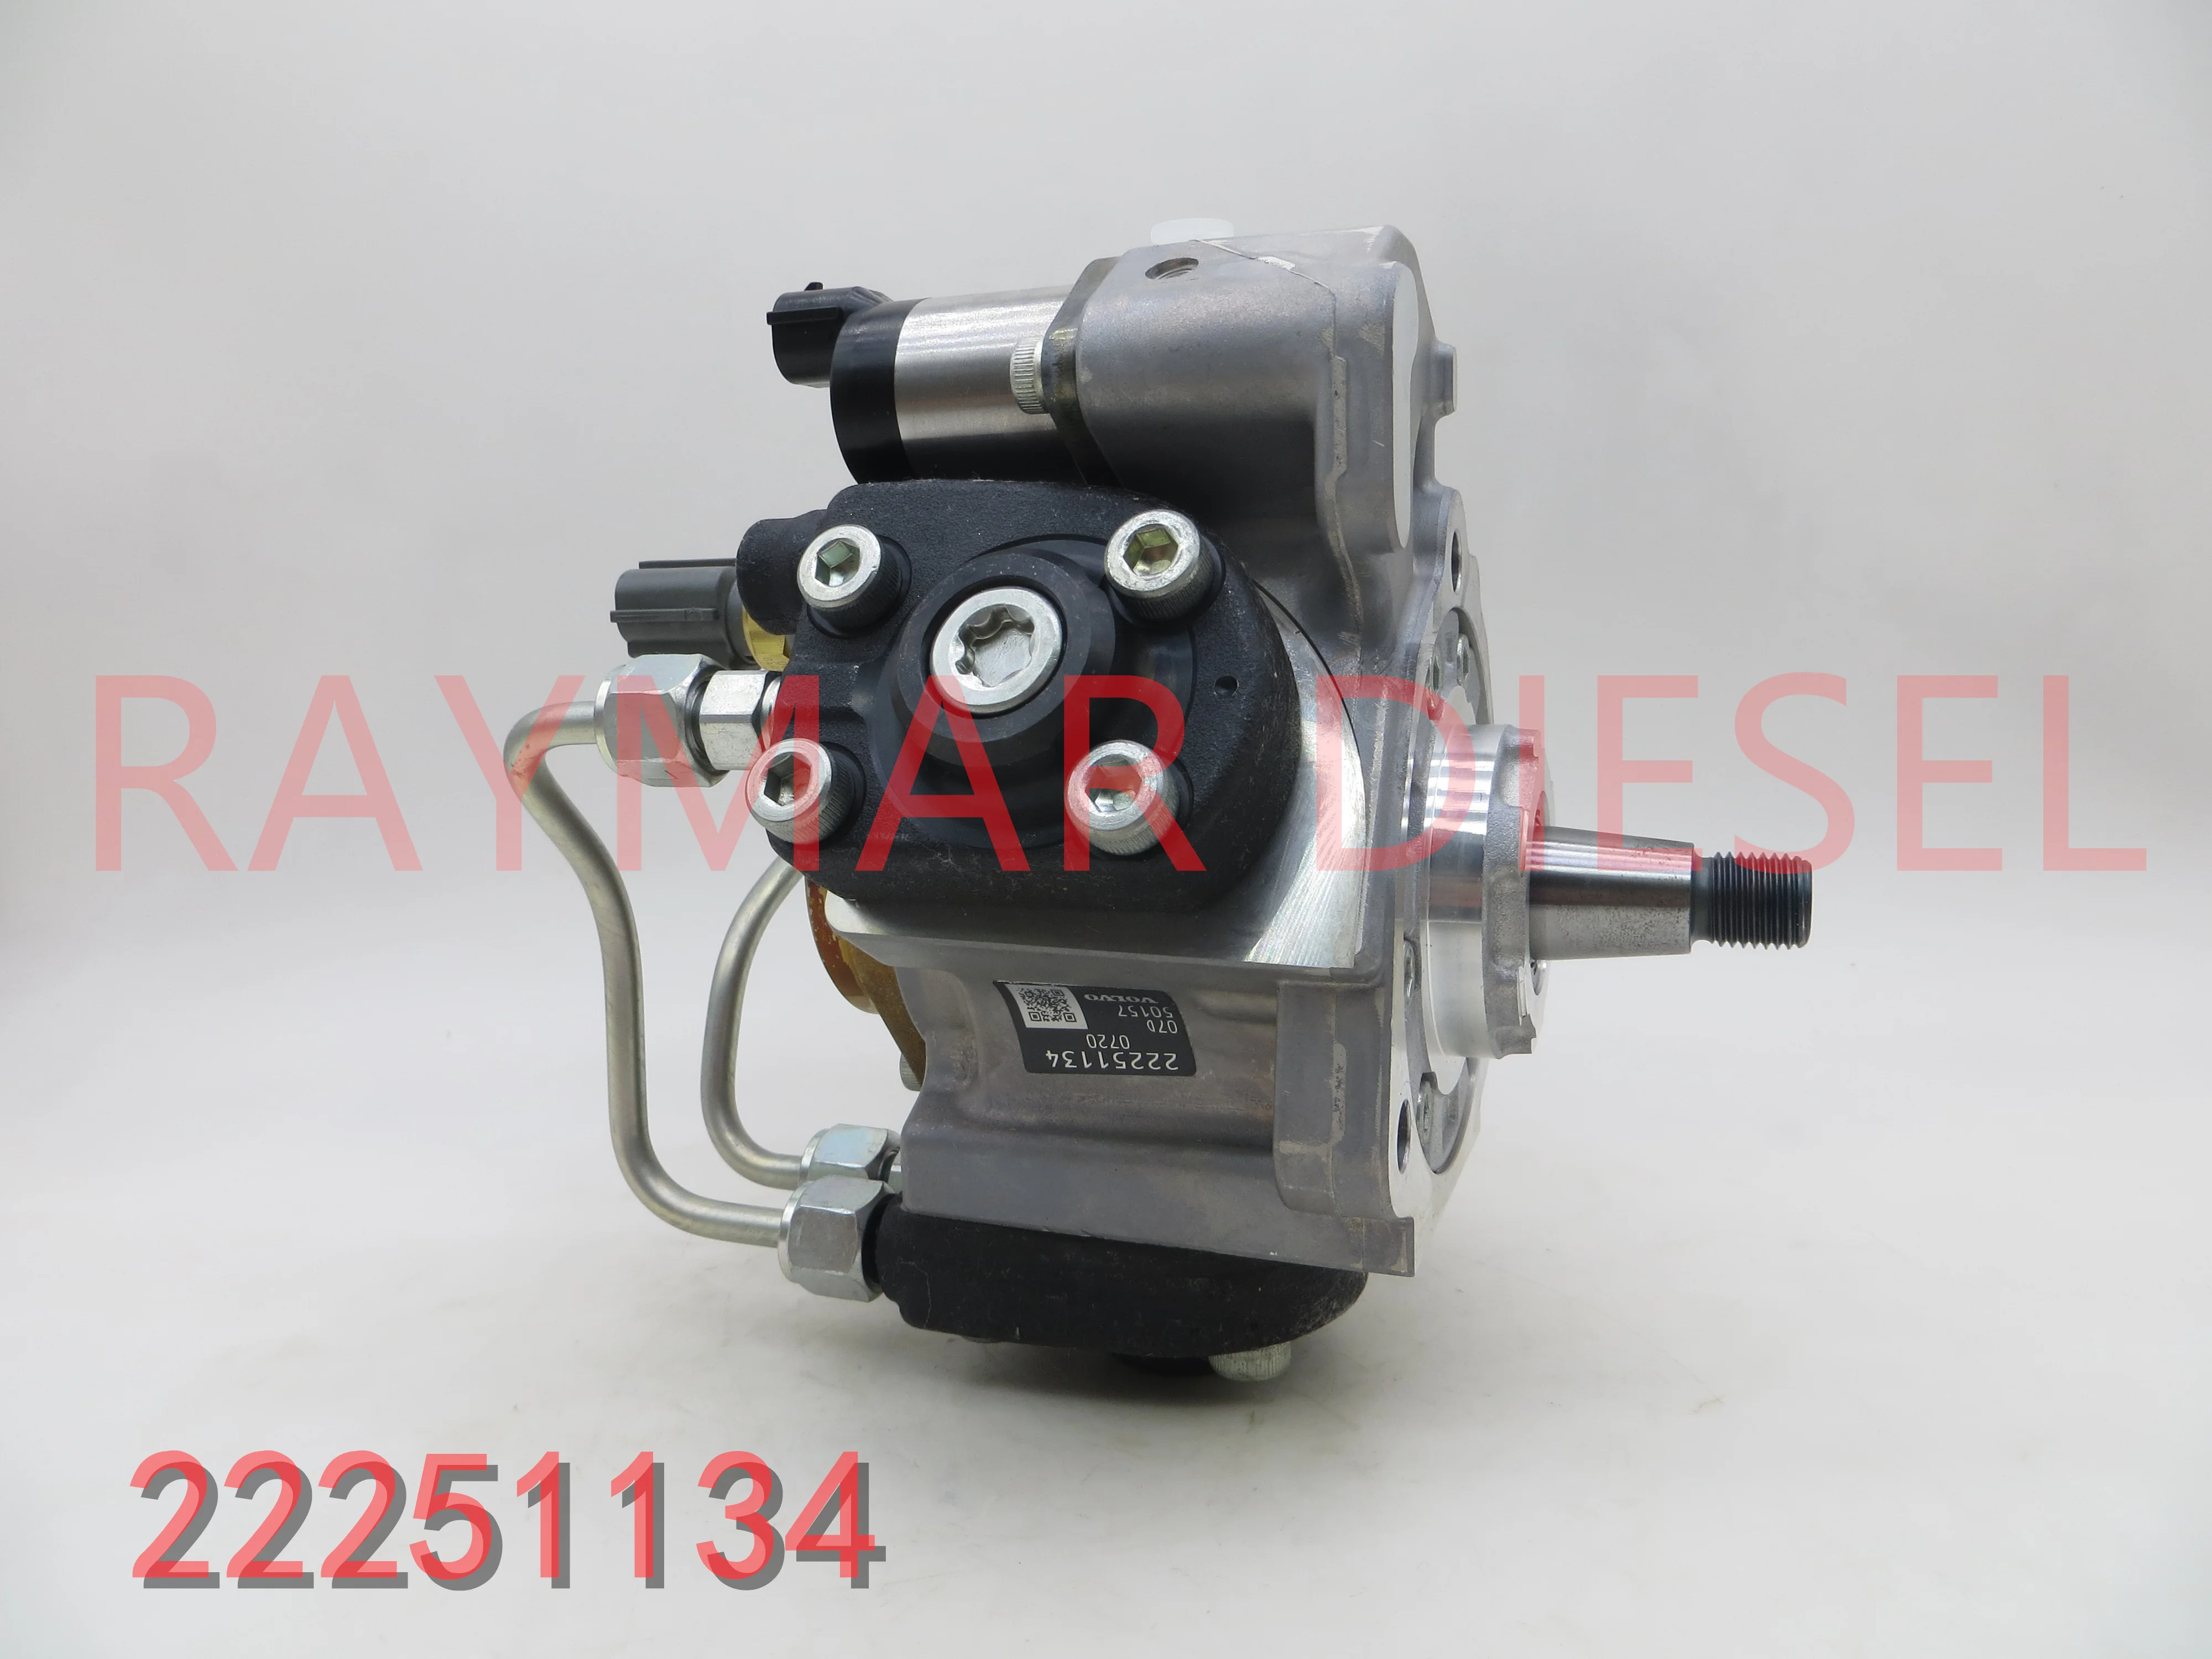 

Genuine Diesel Common Rail Fuel Pump 294050-0720, 22251134